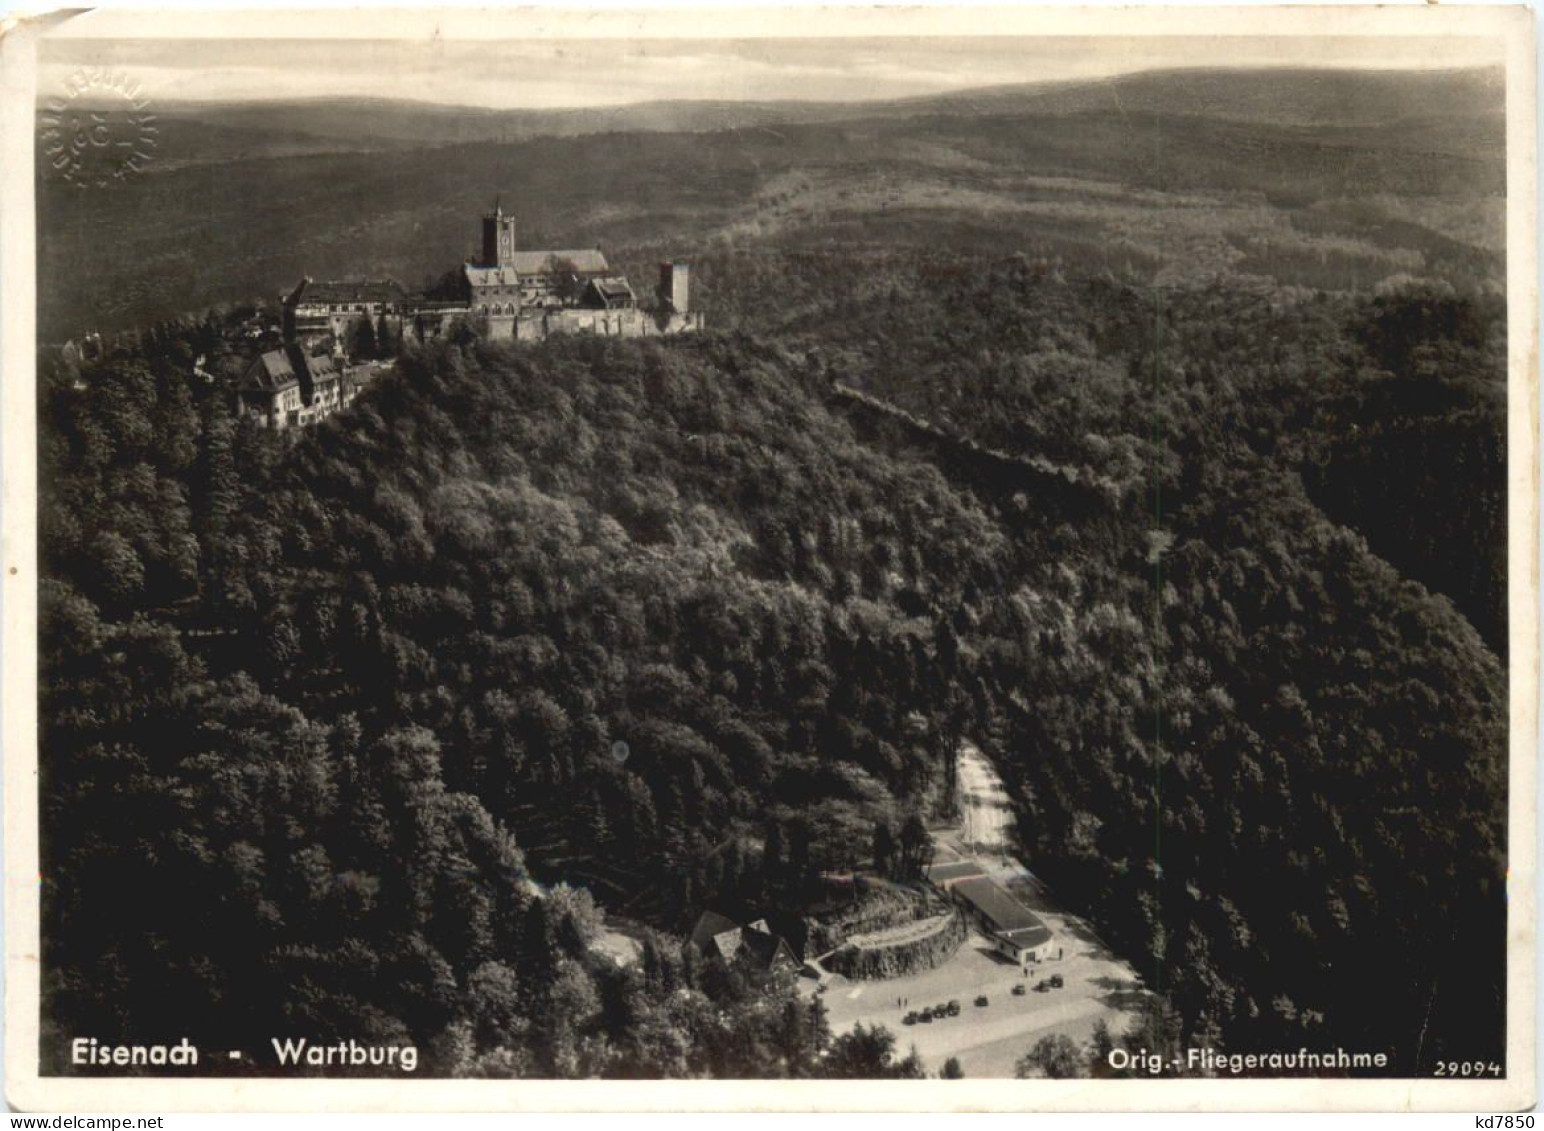 Eisenach - Wartburg - Eisenach